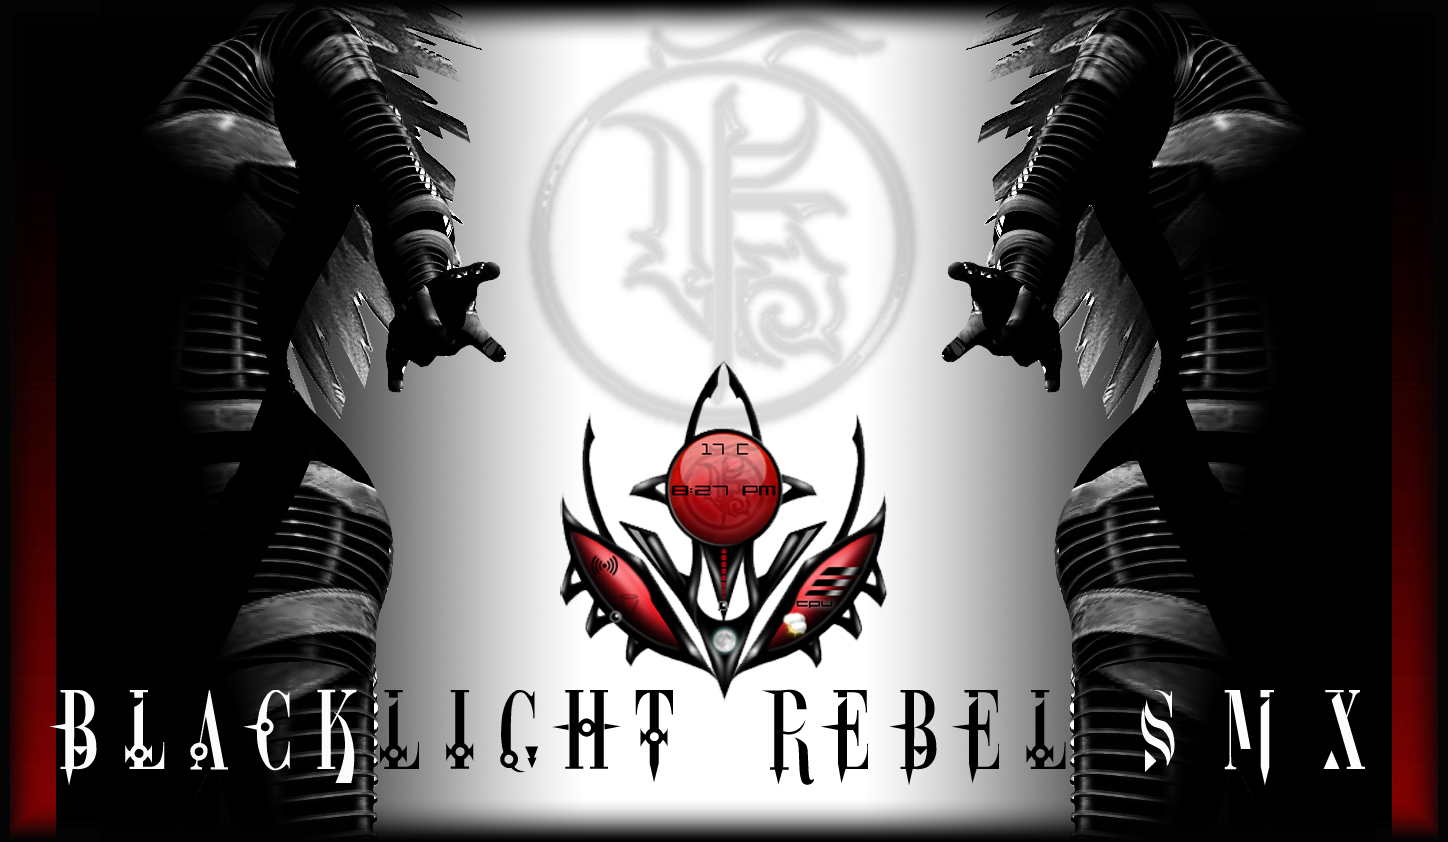 Blacklight Rebel